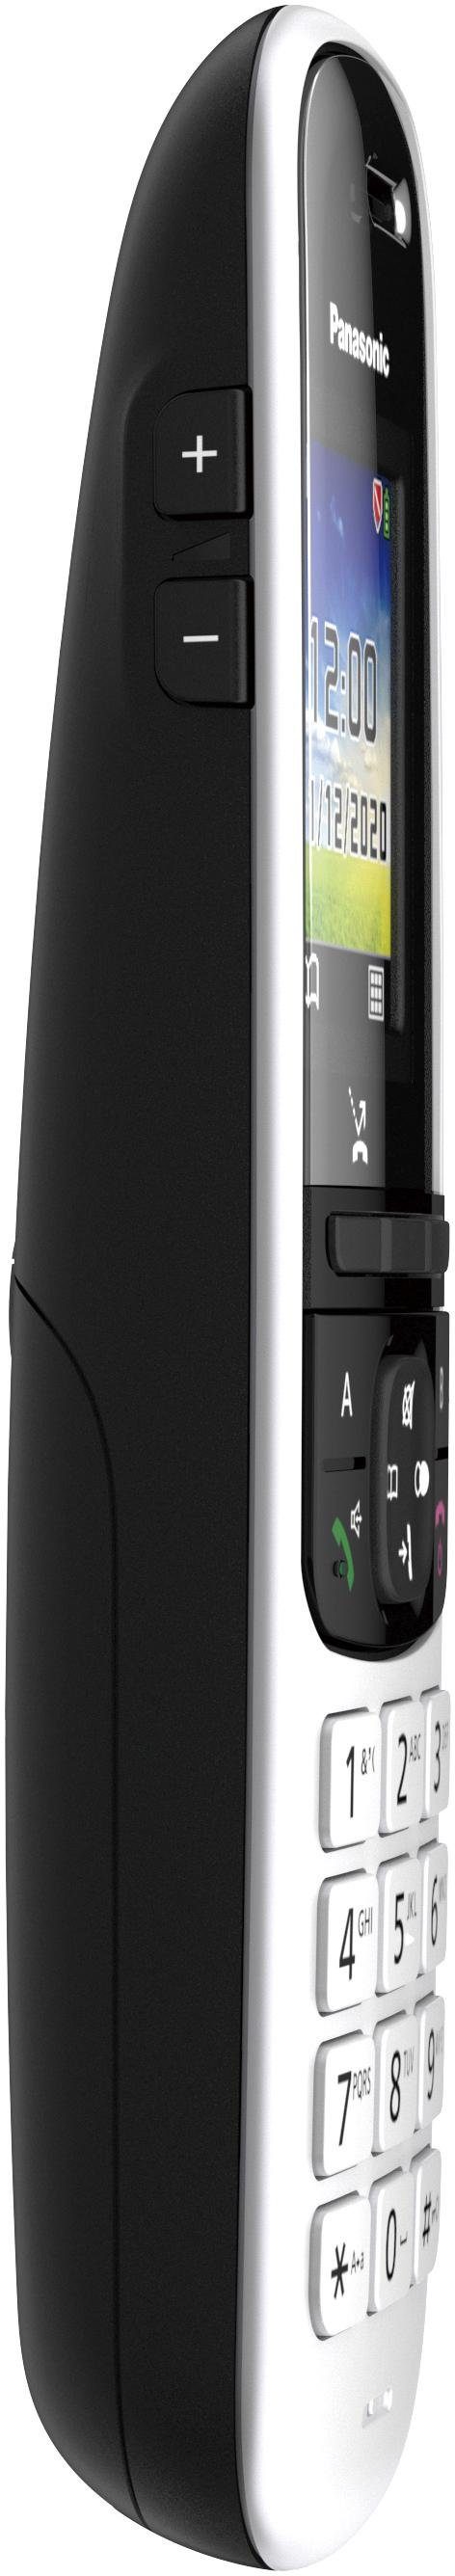 Panasonic KX-TGH722 Duo mit Schnurloses Anrufbeantworter) 2, (Mobilteile: schwarz DECT-Telefon